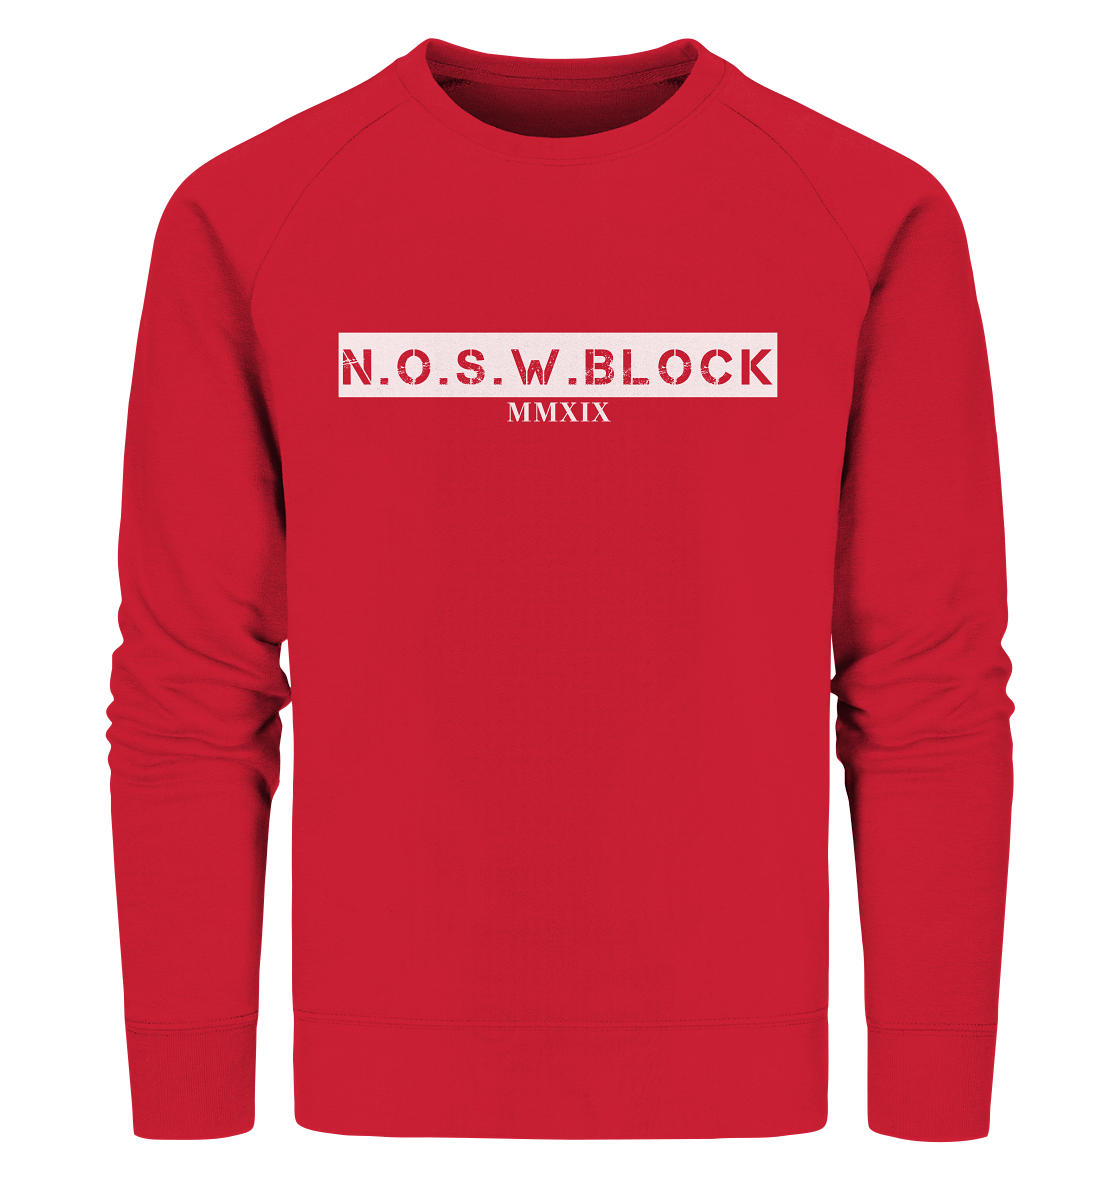 N.O.S.W. BLOCK Sweater "MMXIX" Männer Organic Sweatshirt rot